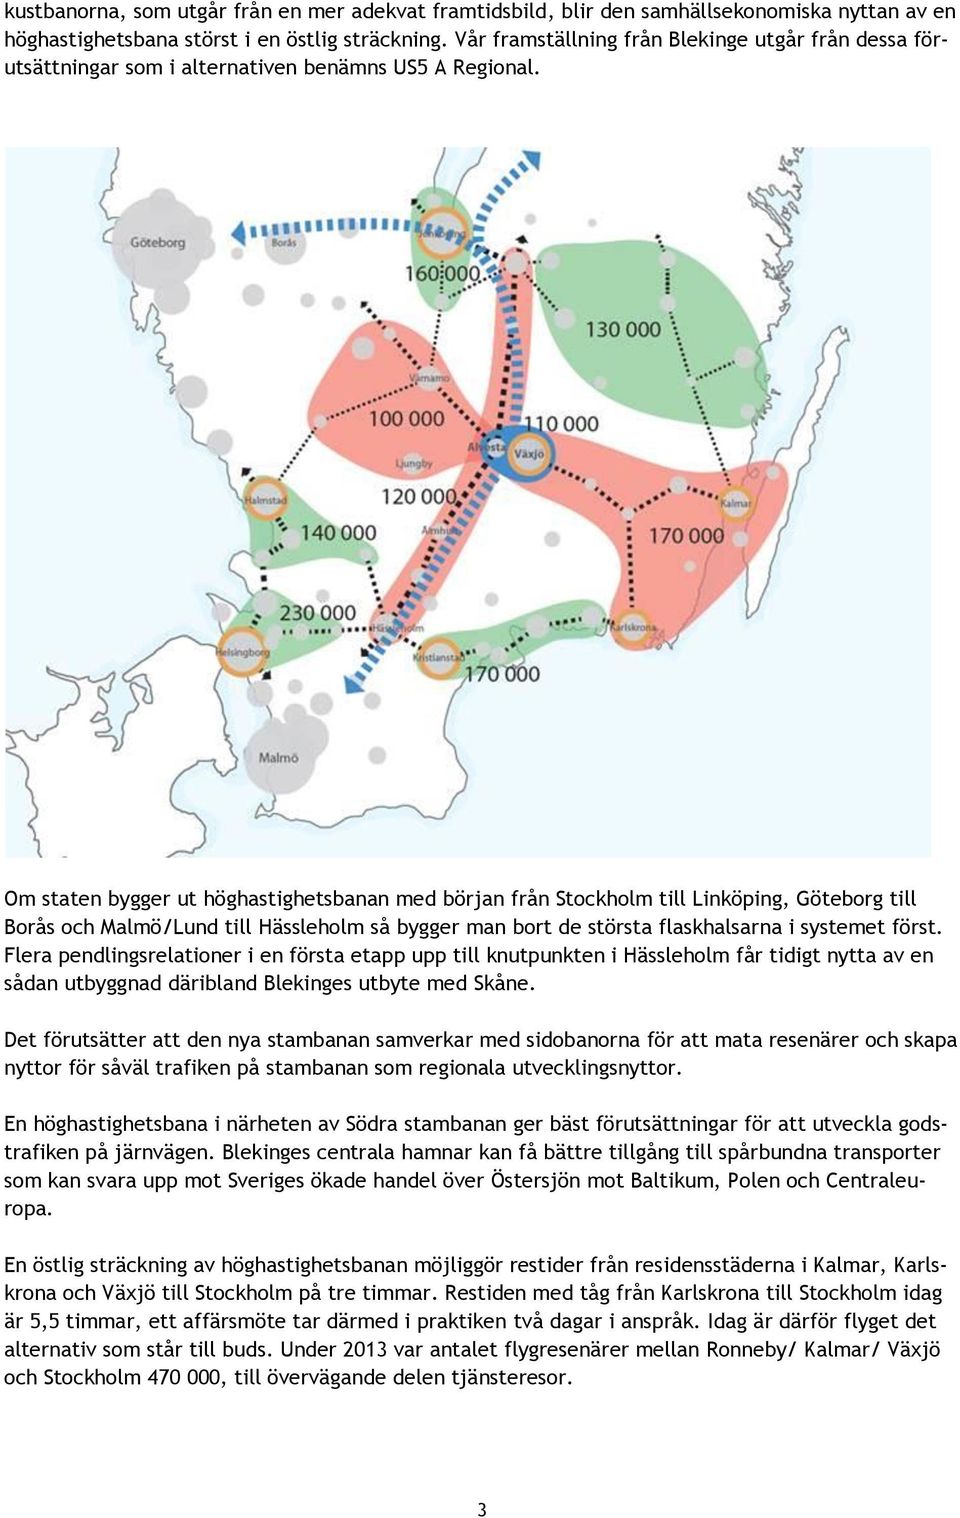 Om staten bygger ut höghastighetsbanan med början från Stockholm till Linköping, Göteborg till Borås och Malmö/Lund till Hässleholm så bygger man bort de största flaskhalsarna i systemet först.